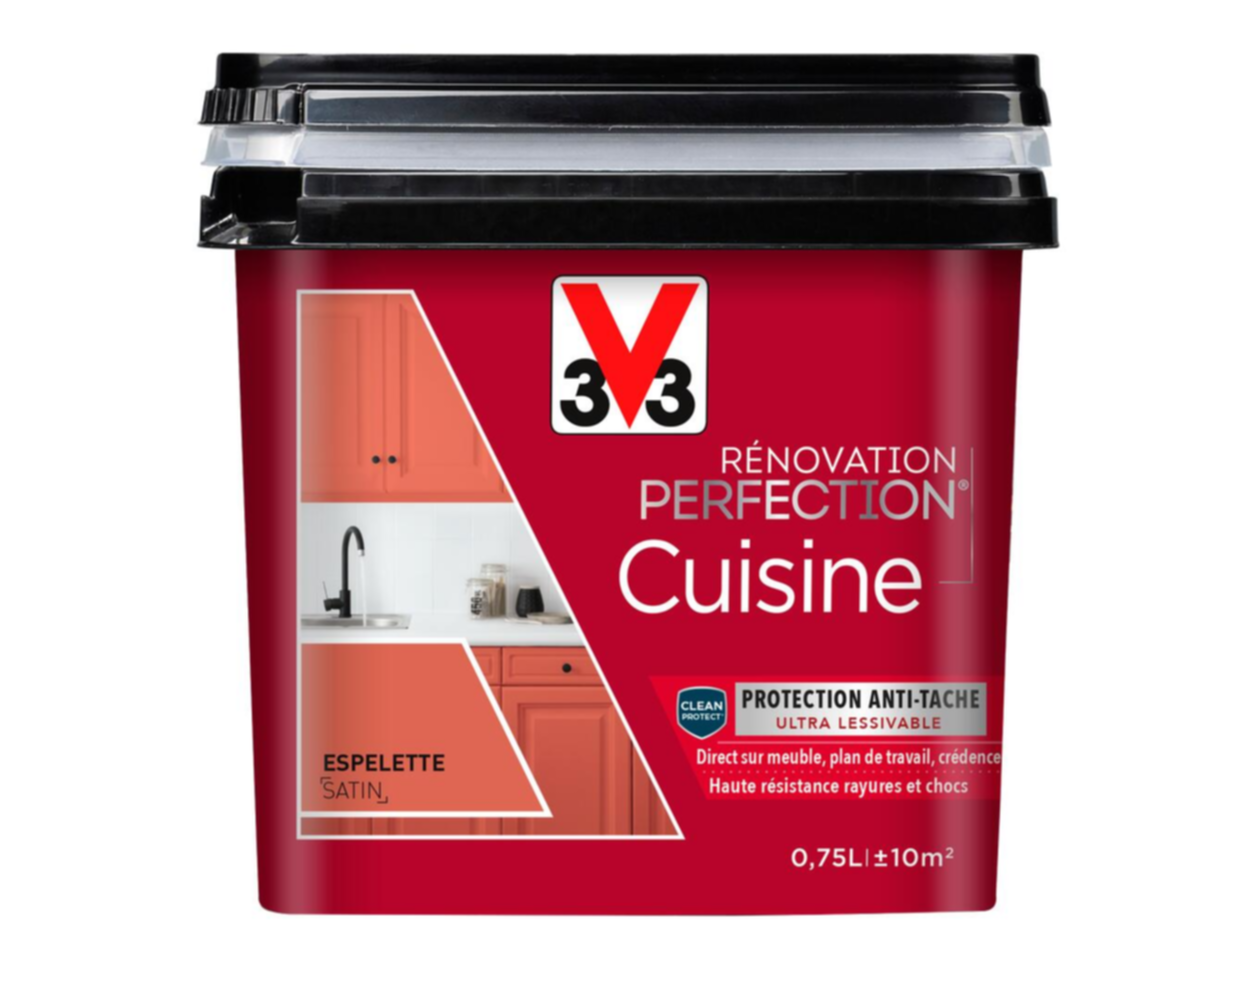 Peinture rénovation cuisine Perfection Espelette satin 0,75l - V33